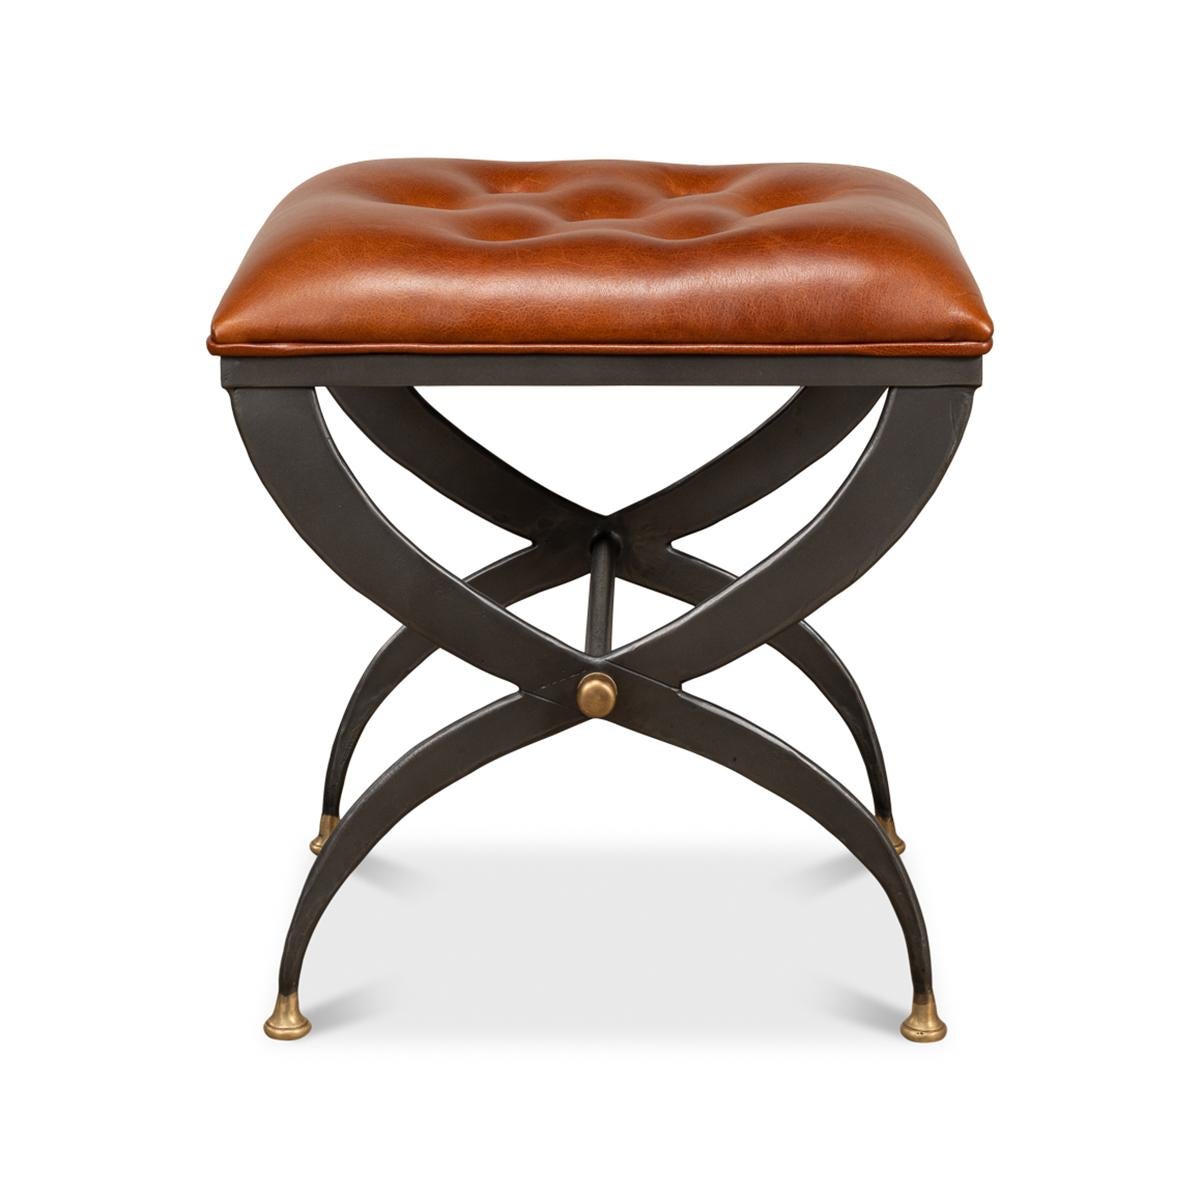 Tabouret Curule moderne avec assise en cuir capitonné sur une base de forme curule en fer finition étain avec accents dorés.

Dimensions : 20